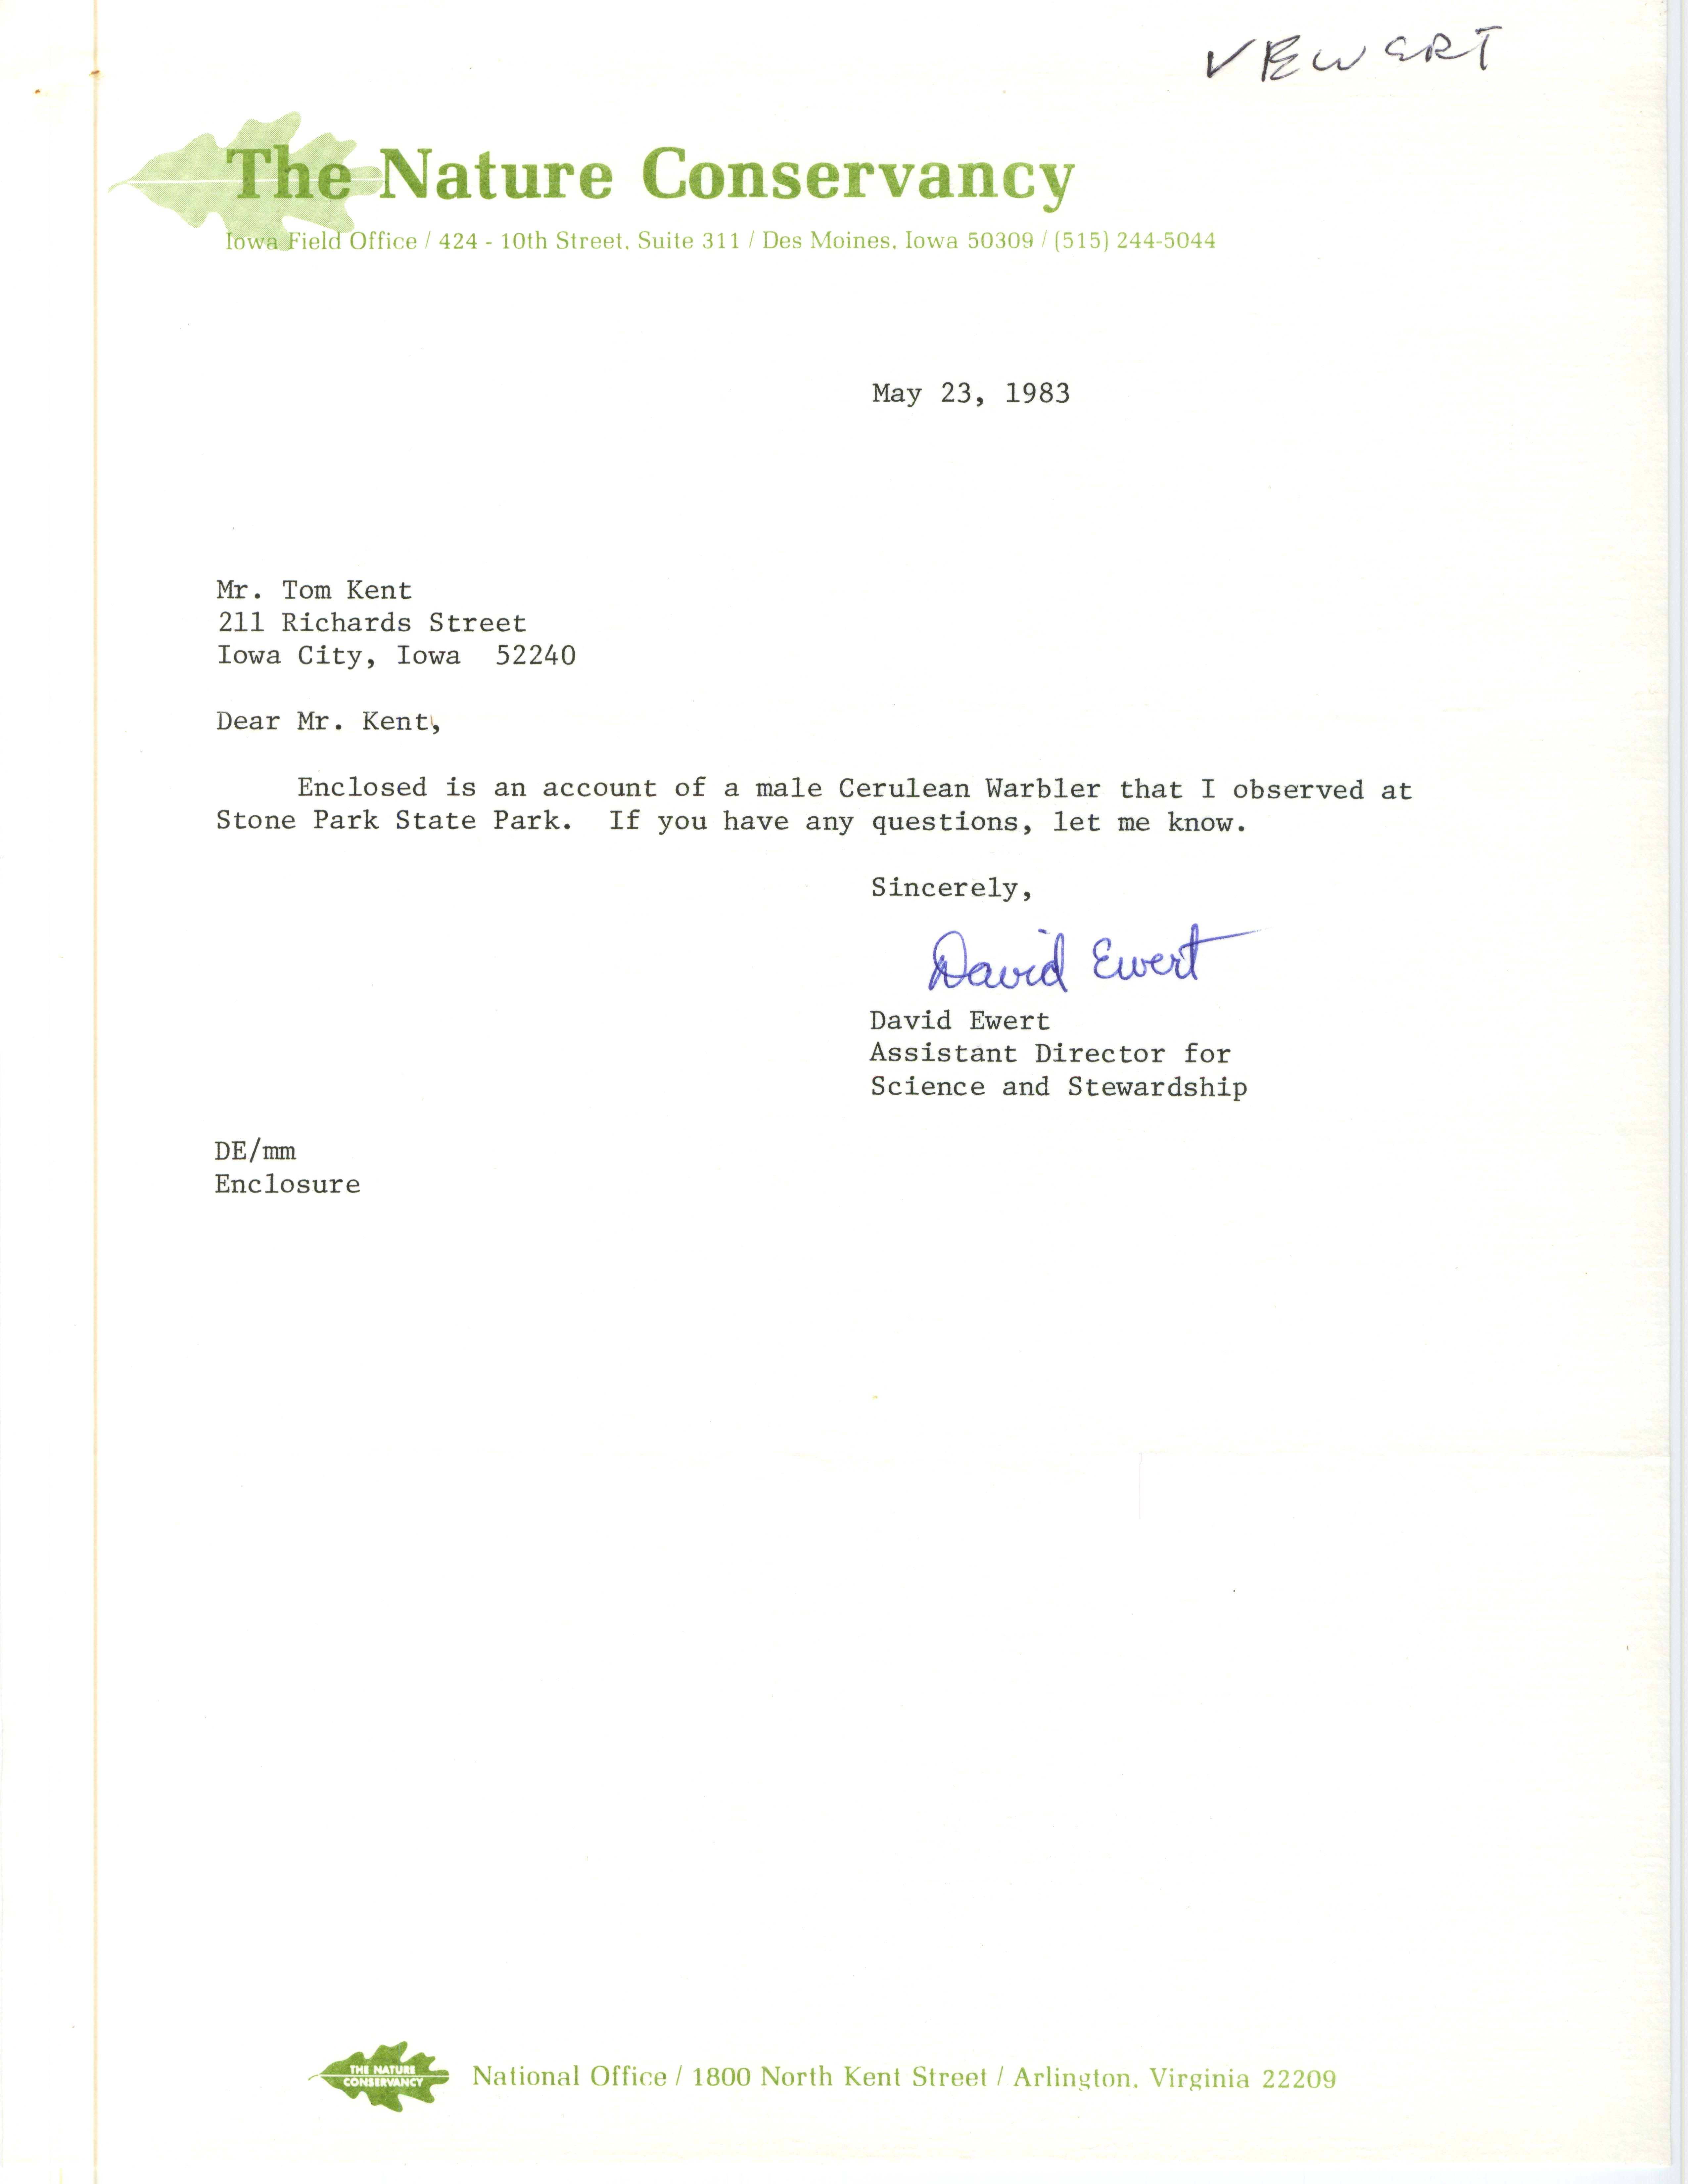 David Ewert letter to Thomas H. Kent regarding a Cerulean Warbler sighting, May 23, 1983